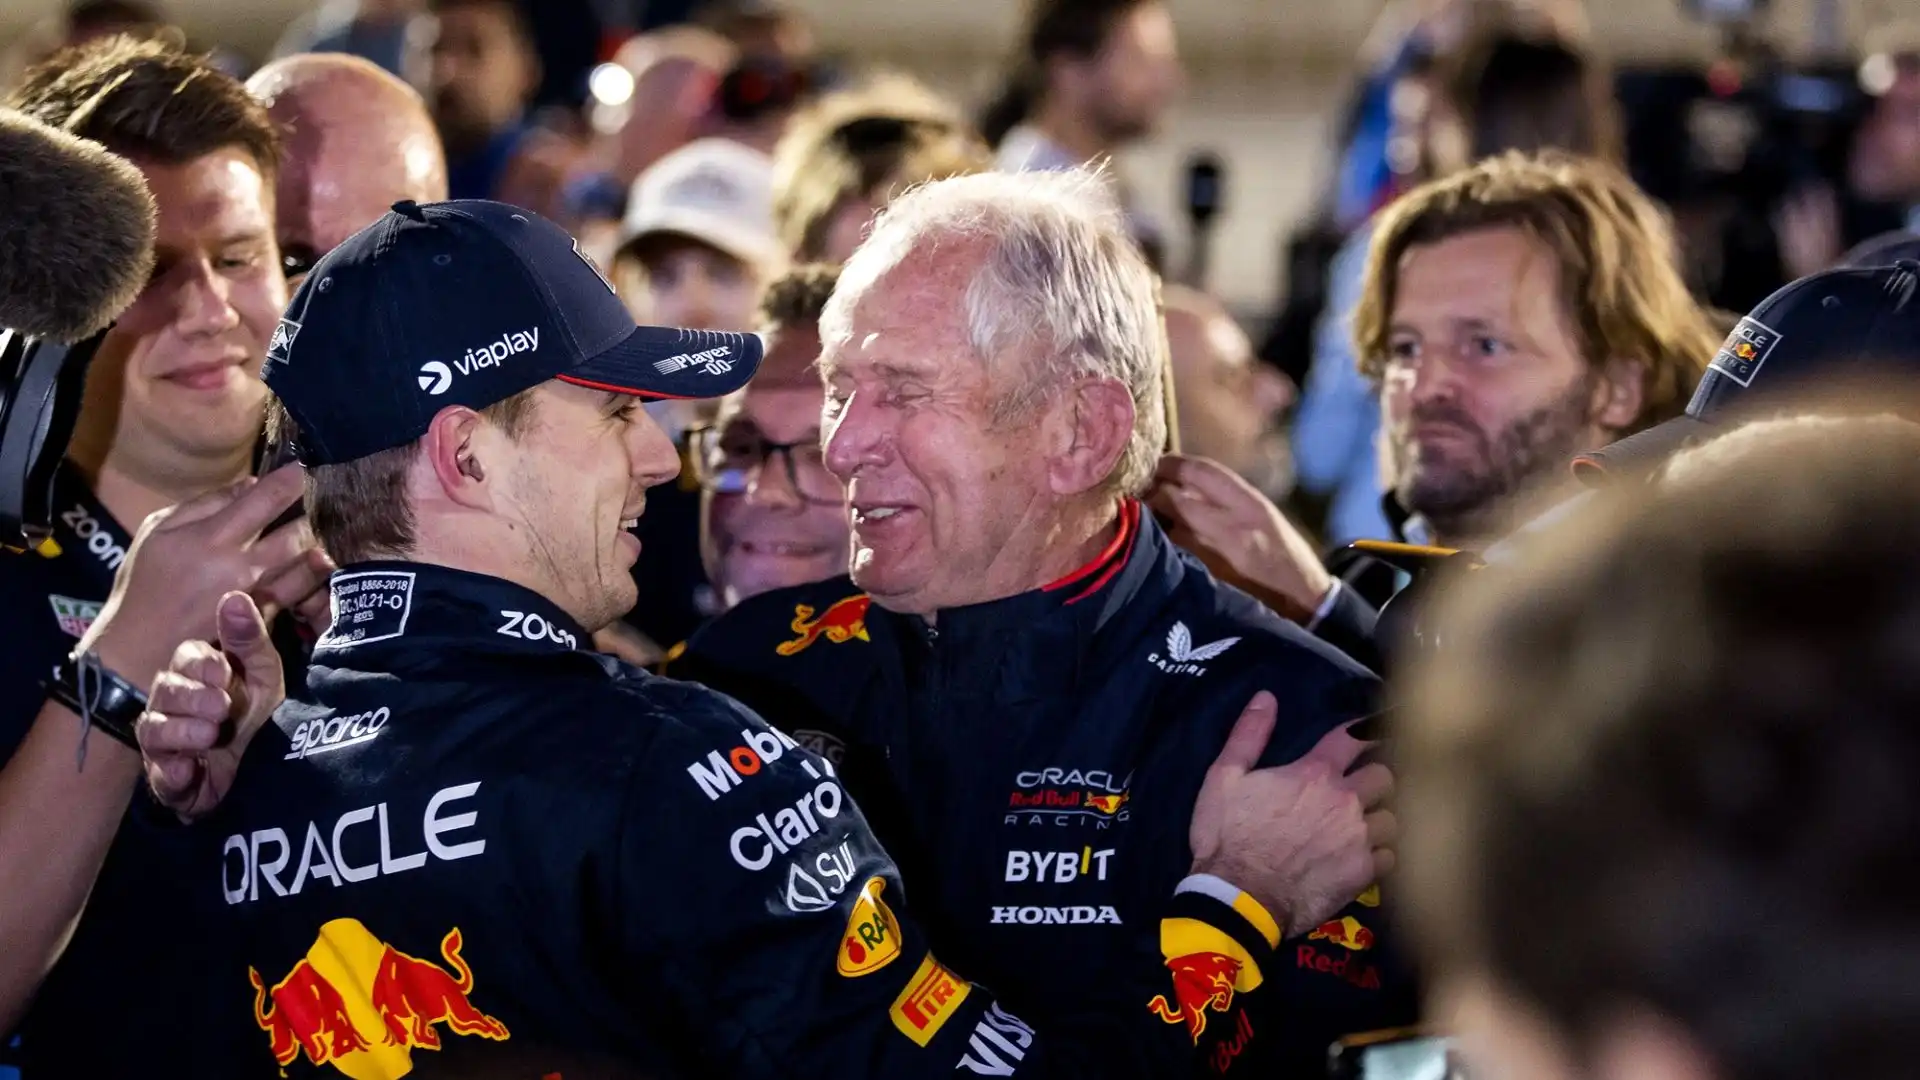 Le indiscrezioni sullo scontro interno al team Red Bull stanno facendo discutere il mondo della Formula 1